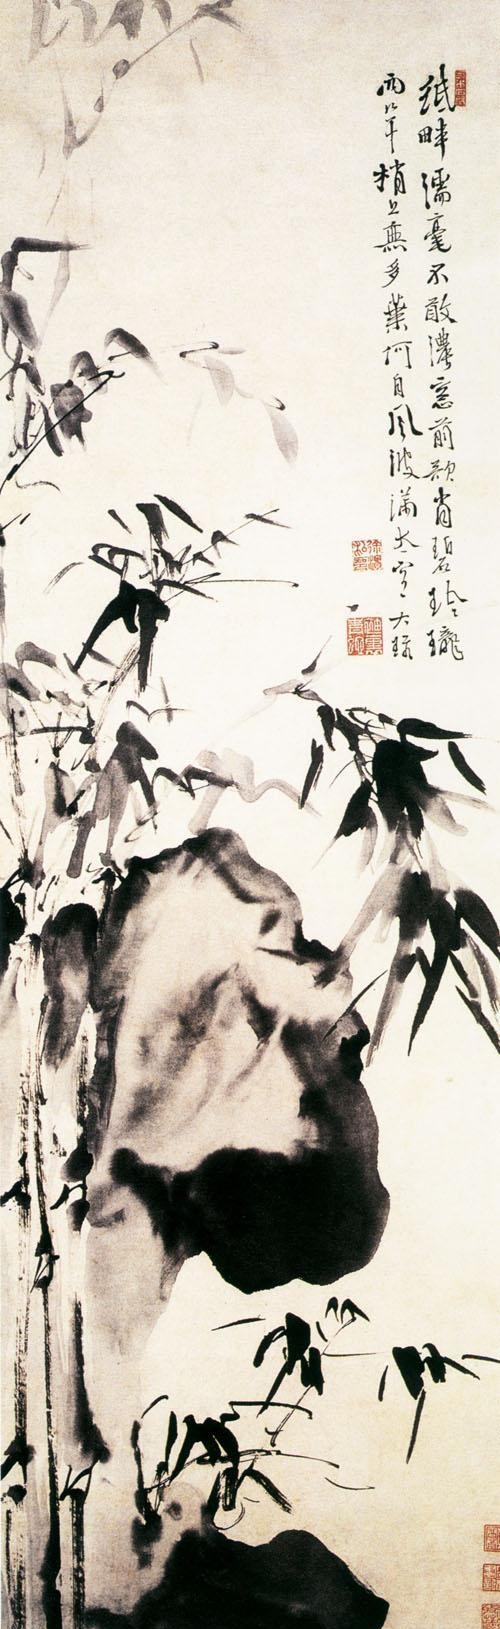 中国泼墨大写意花鸟画的创始人——徐渭，国画大师们的偶像